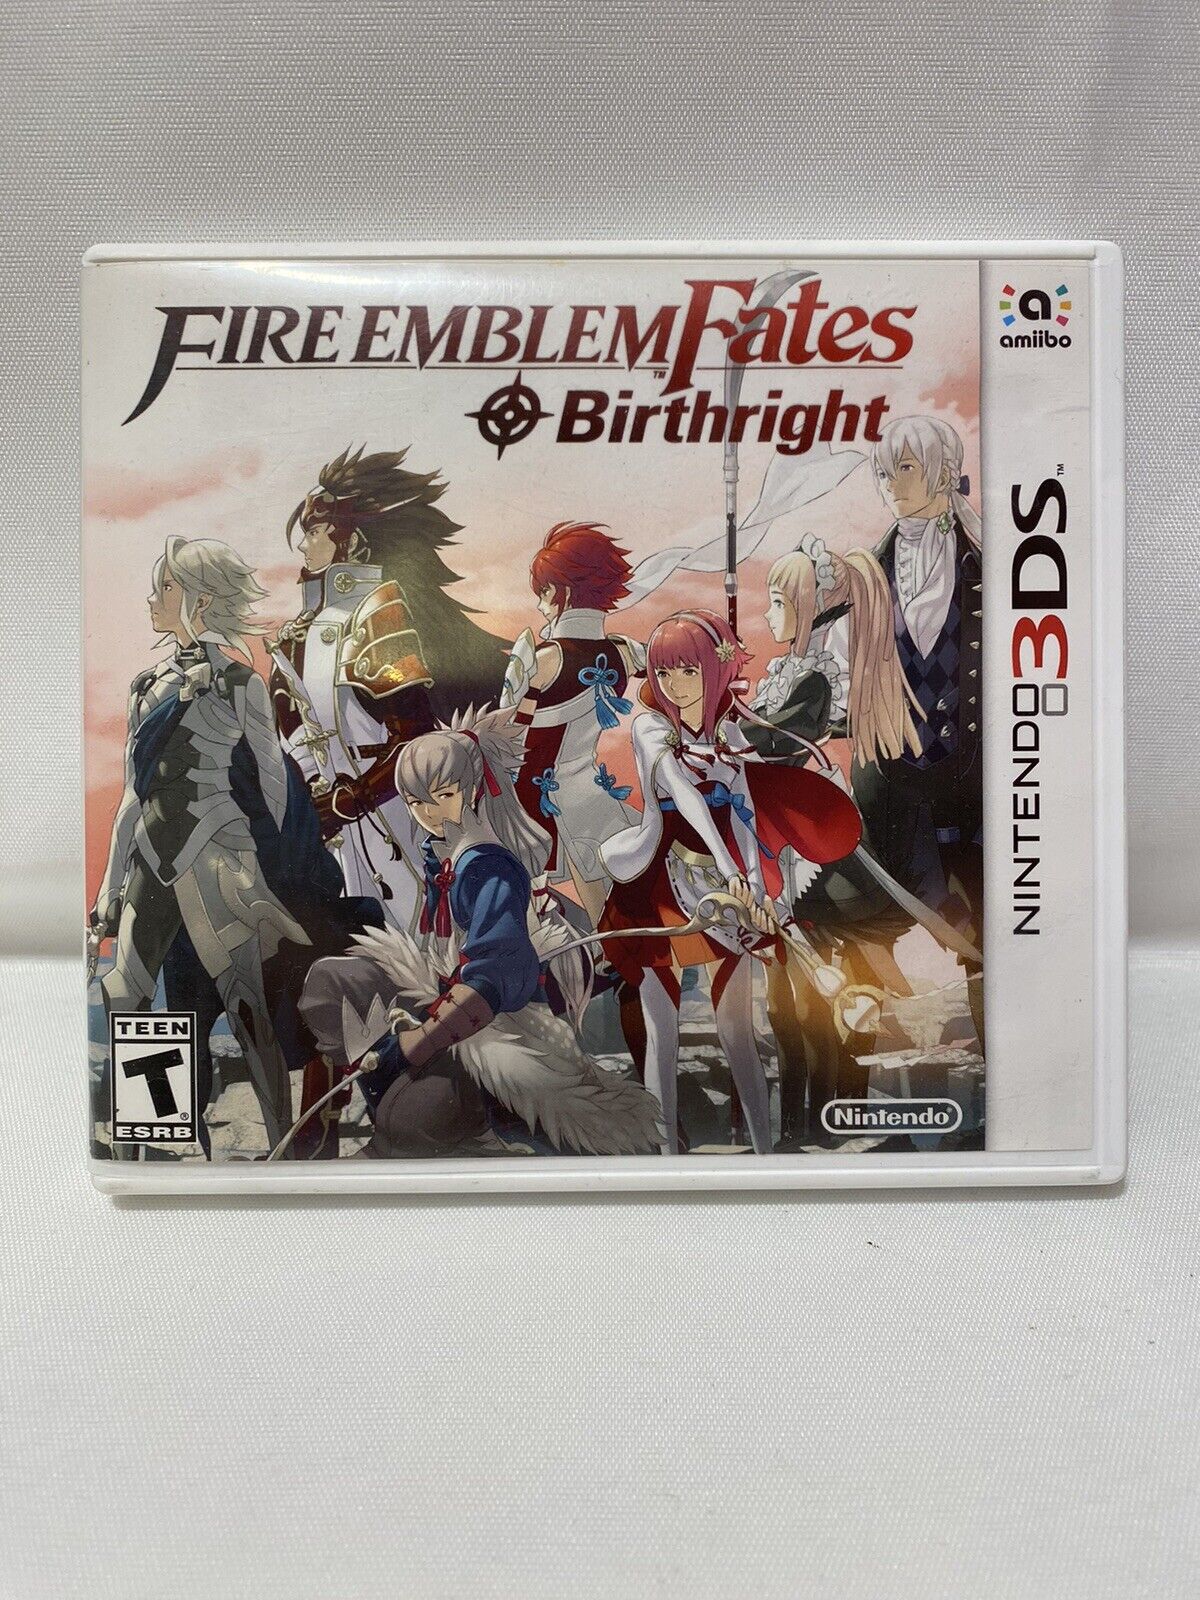 detaljer føle tjene Nintendo 3DS Fire Emblem Fates Birthright Original Case with NOT WORKING  GAME! 45496743154 | eBay